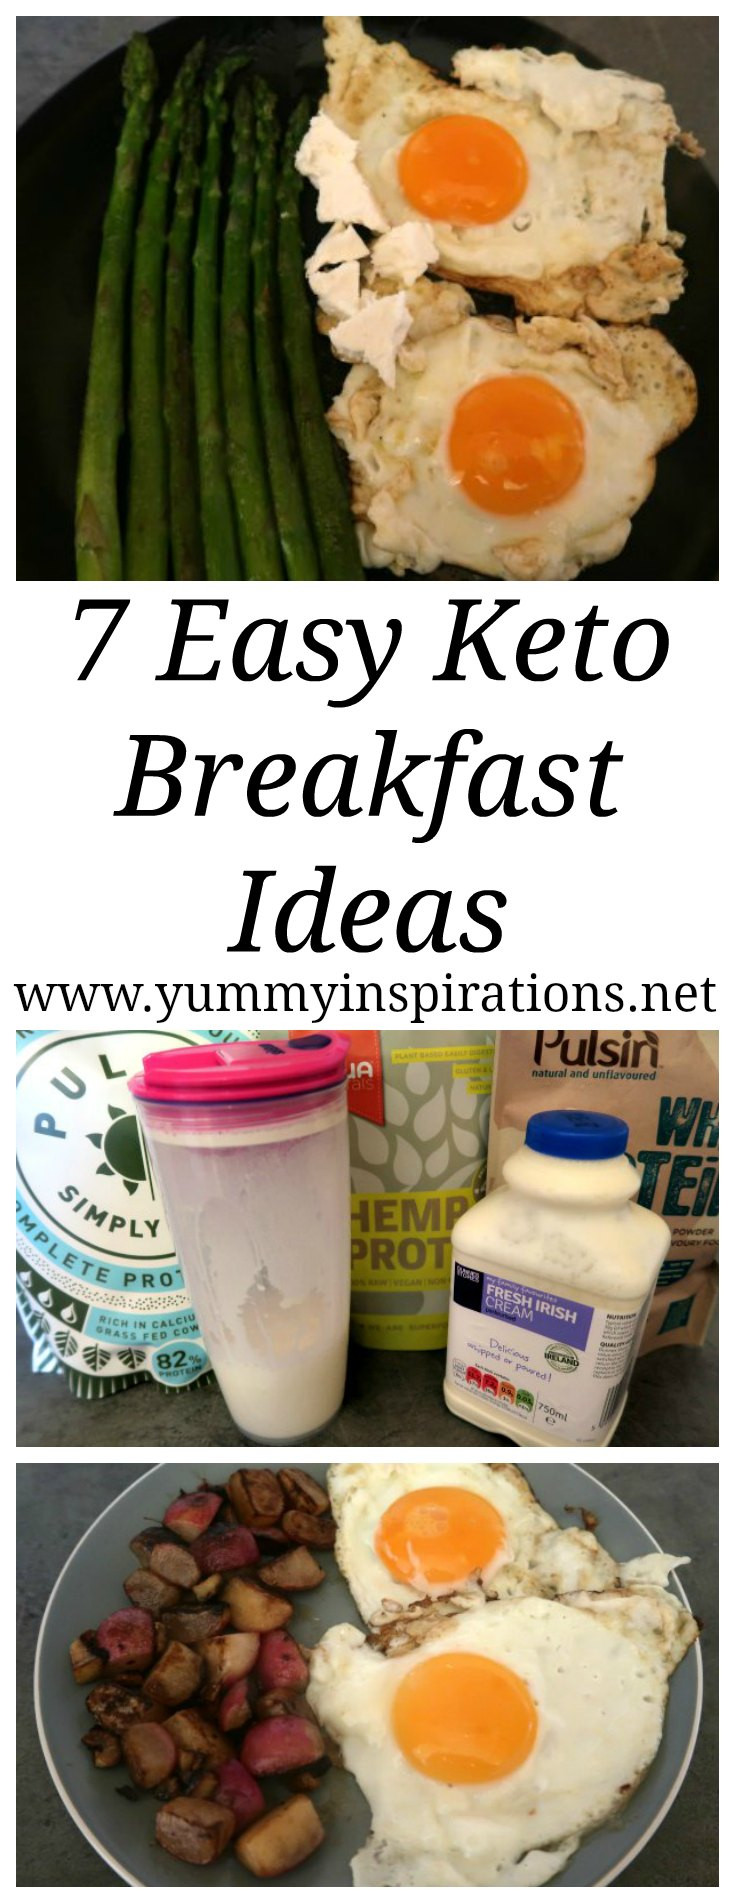 Keto Breakfast Ideas
 7 Easy Keto Breakfast Ideas Low Carb & Ketogenic Diet